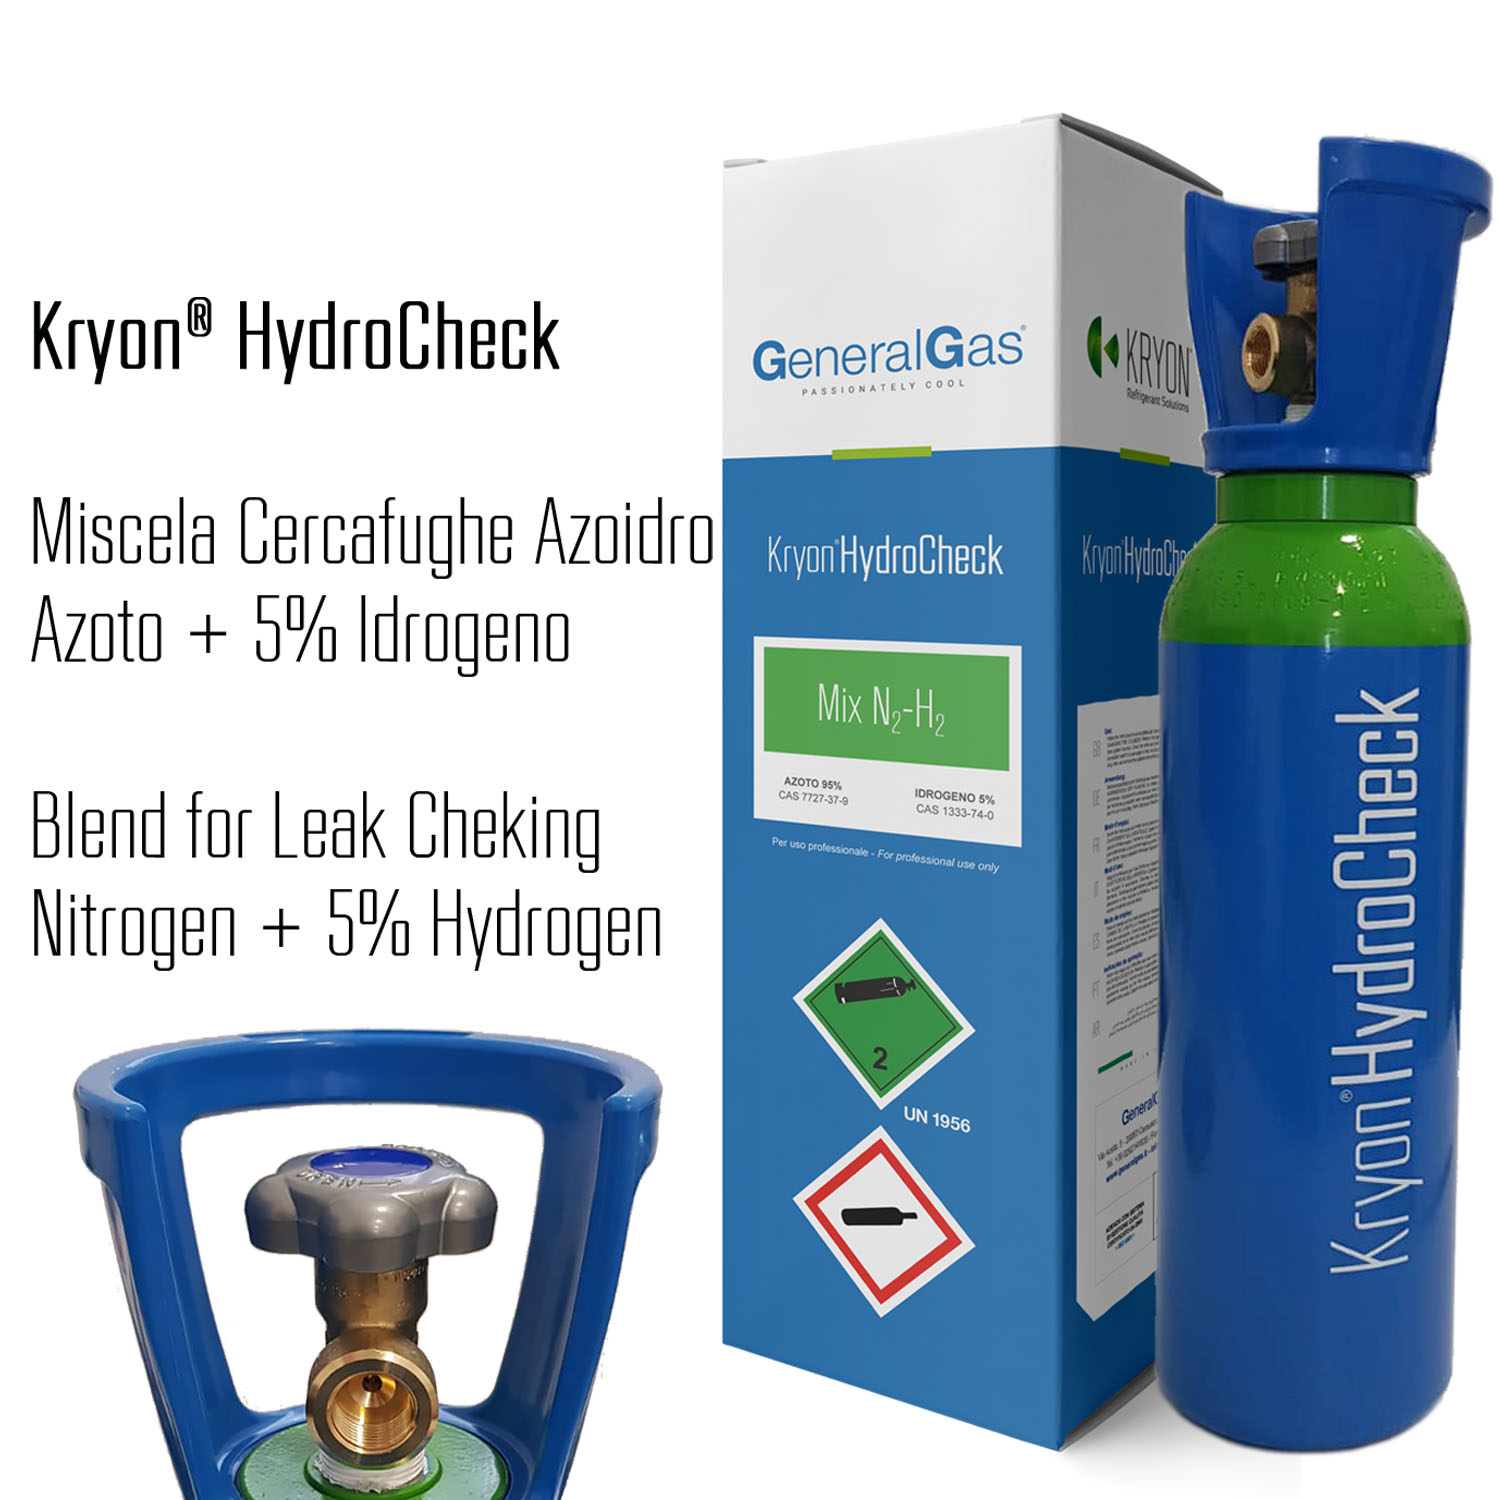 Kryon® HydroCheck - bombola azoto 5% idrogeno (miscela cercafughe azoidro) capacità 5 litri 200 bar - caricata con 1 mc di miscela, completa di valvola - Foto 1 